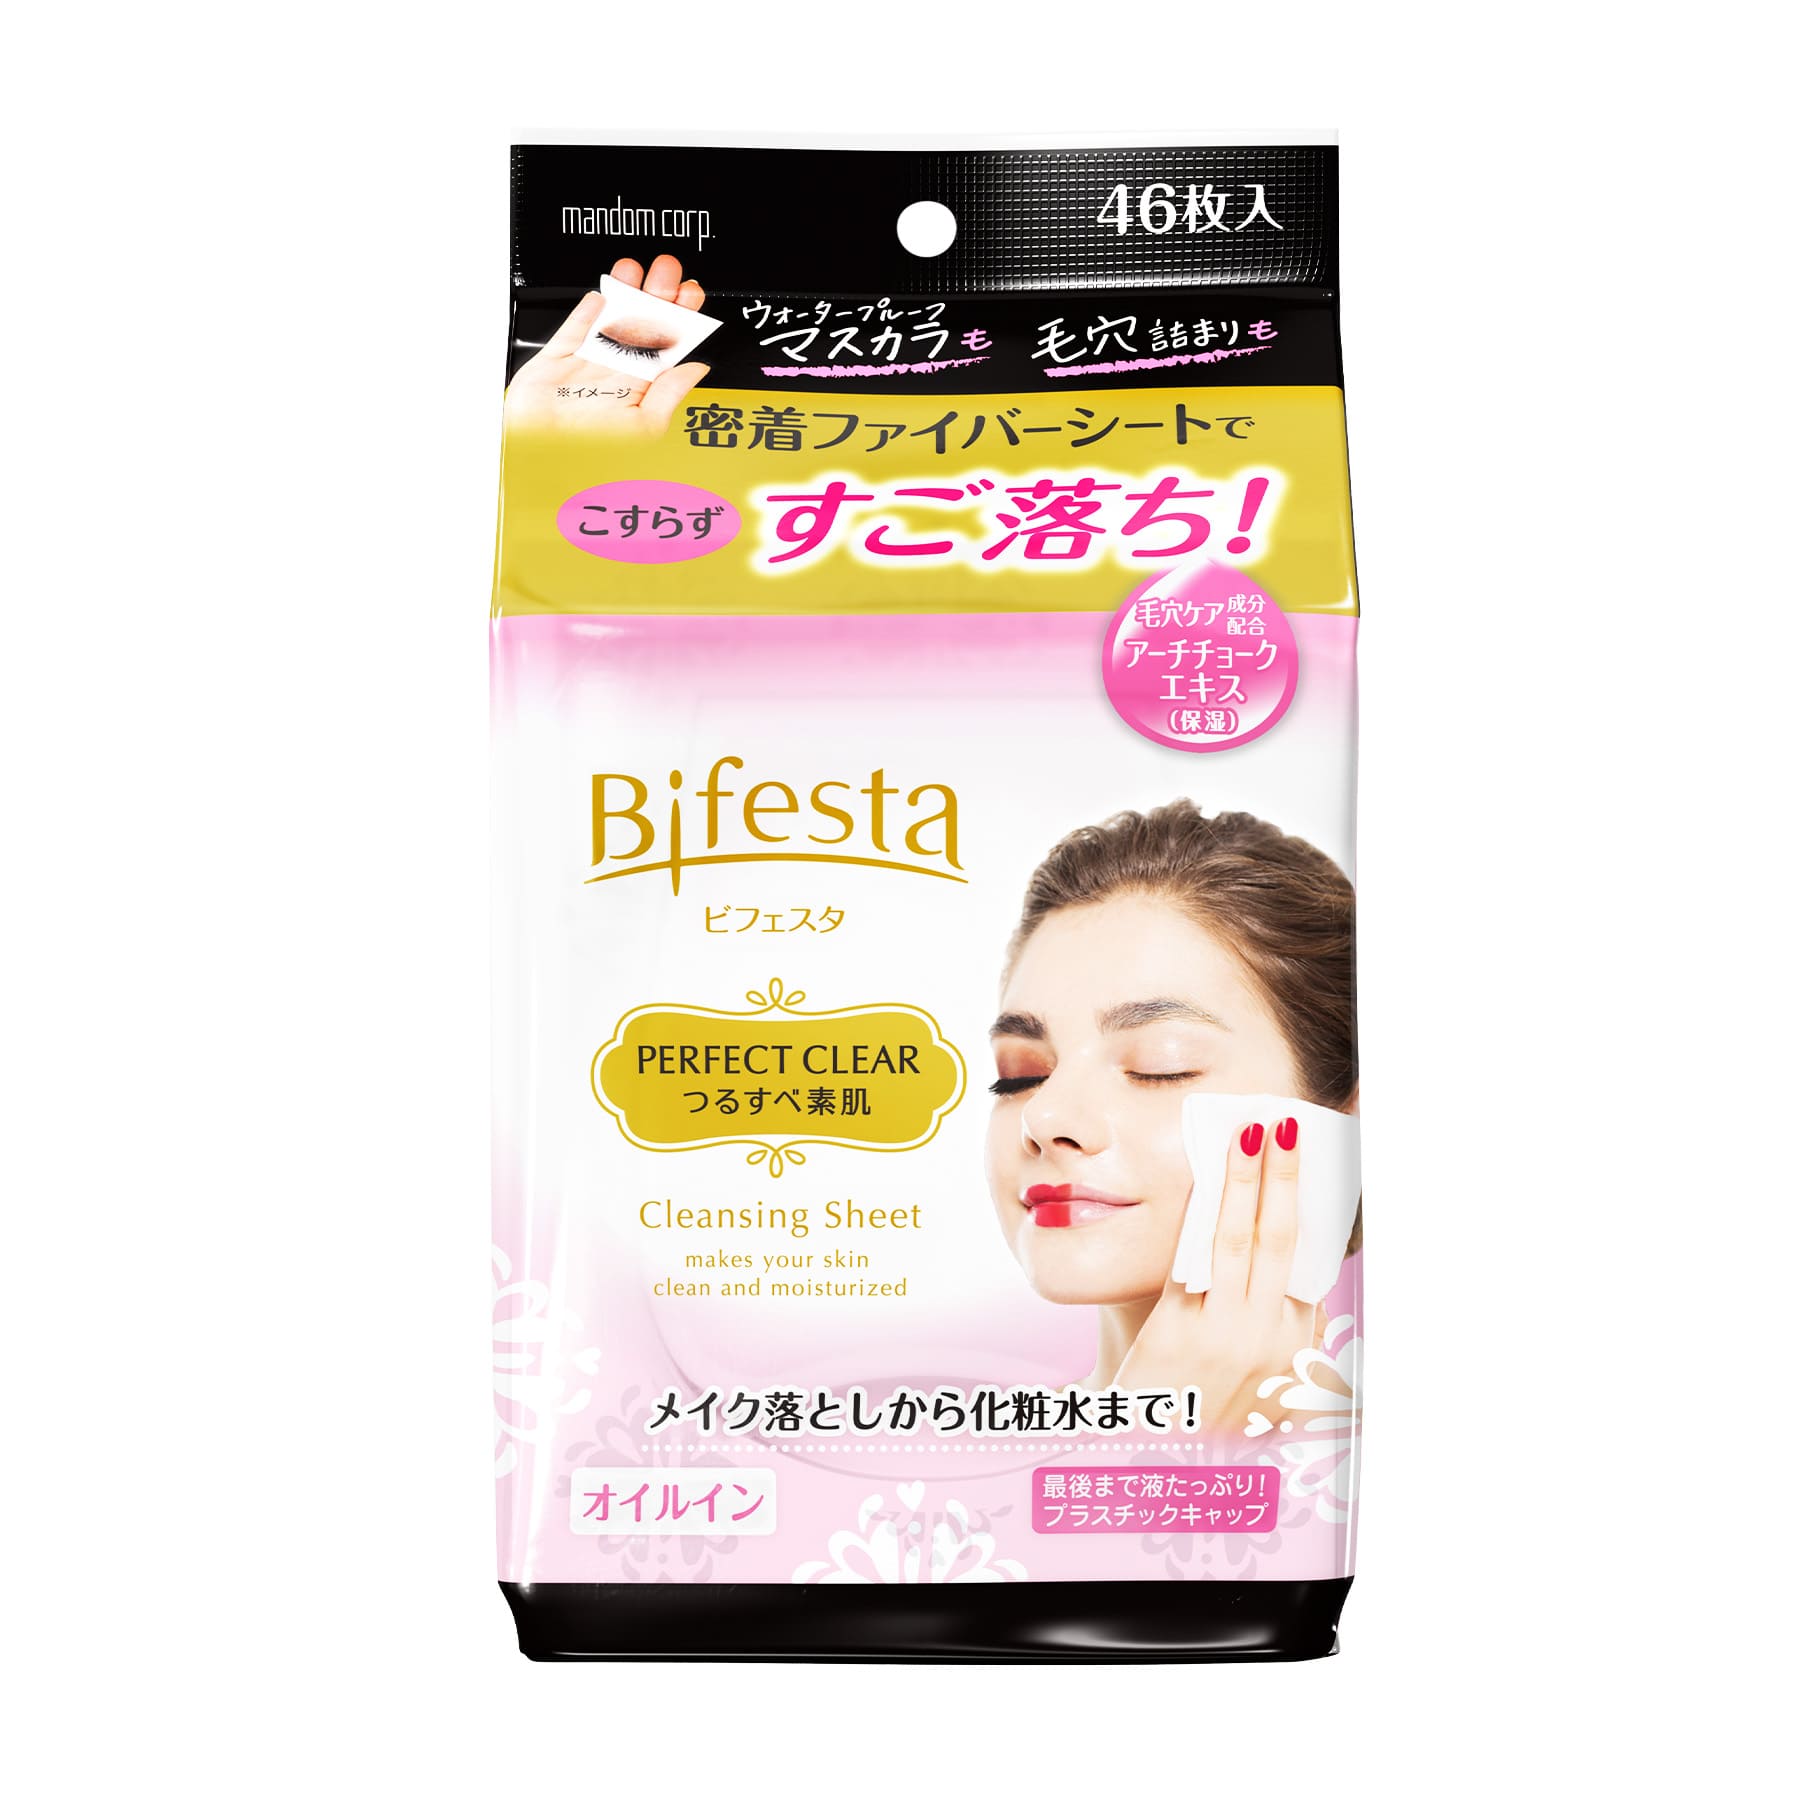 Bifesta 毛孔淨緻深層卸妝紙 (防水妝適用) 46片裝